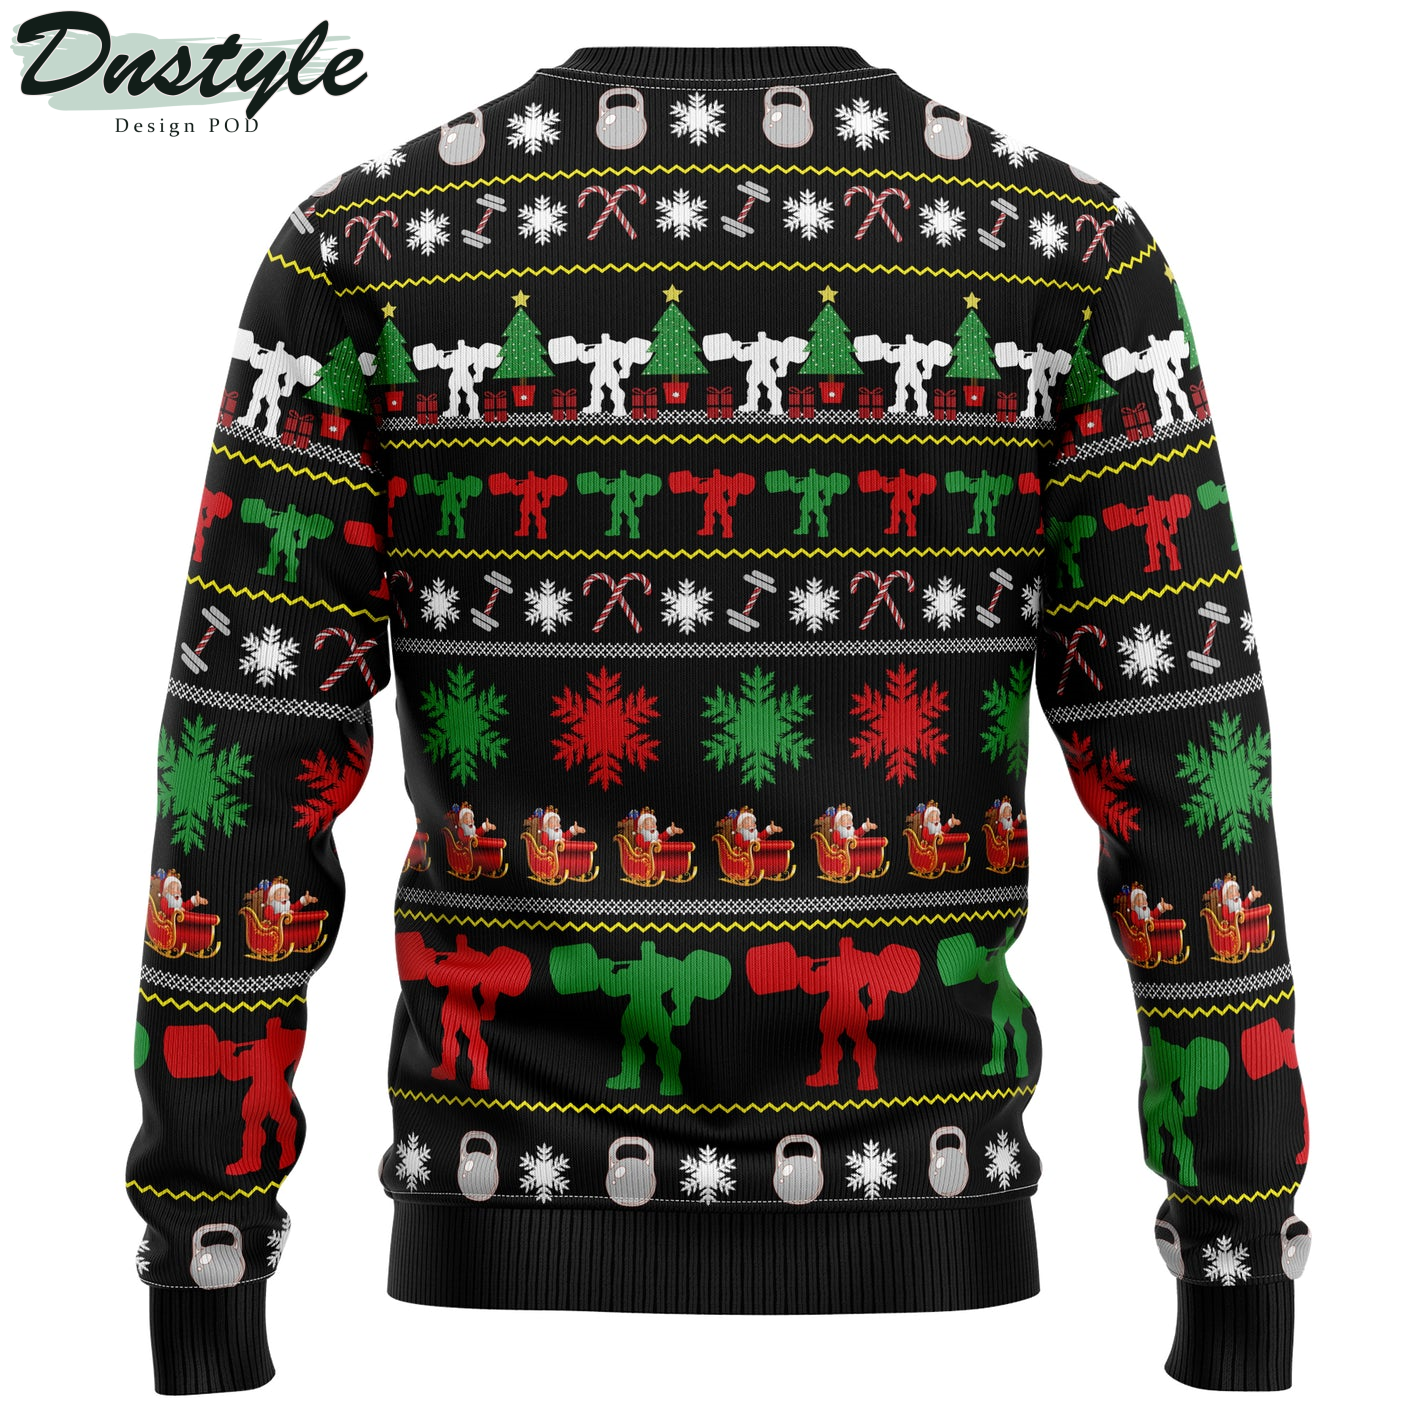 Satan Claus No Lift No Gift Ugly Christmas Sweater